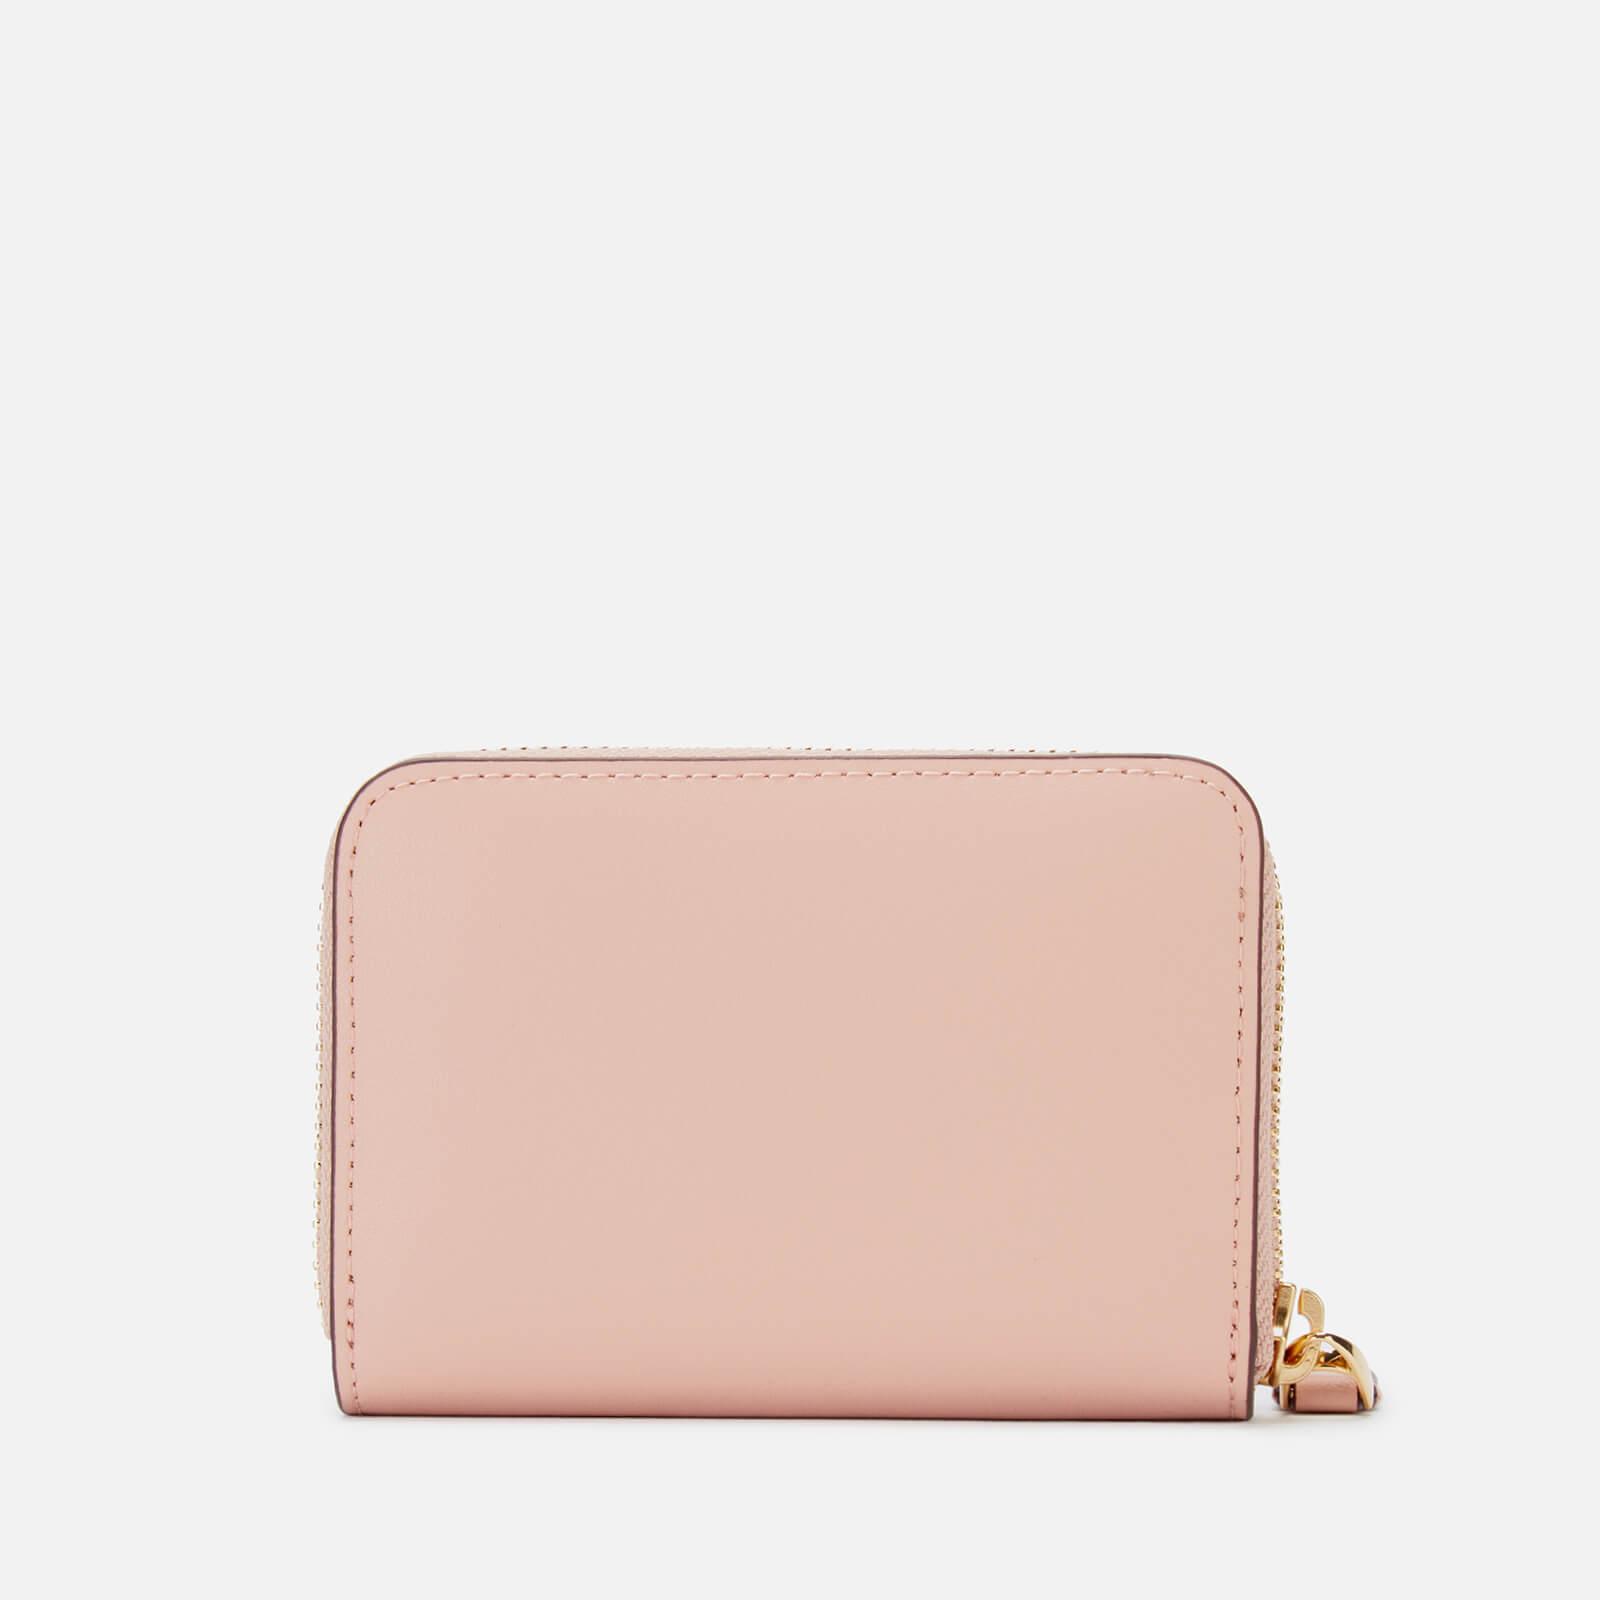 Lauren by Ralph Lauren Leather Small Zip Wallet in Pink - Lyst